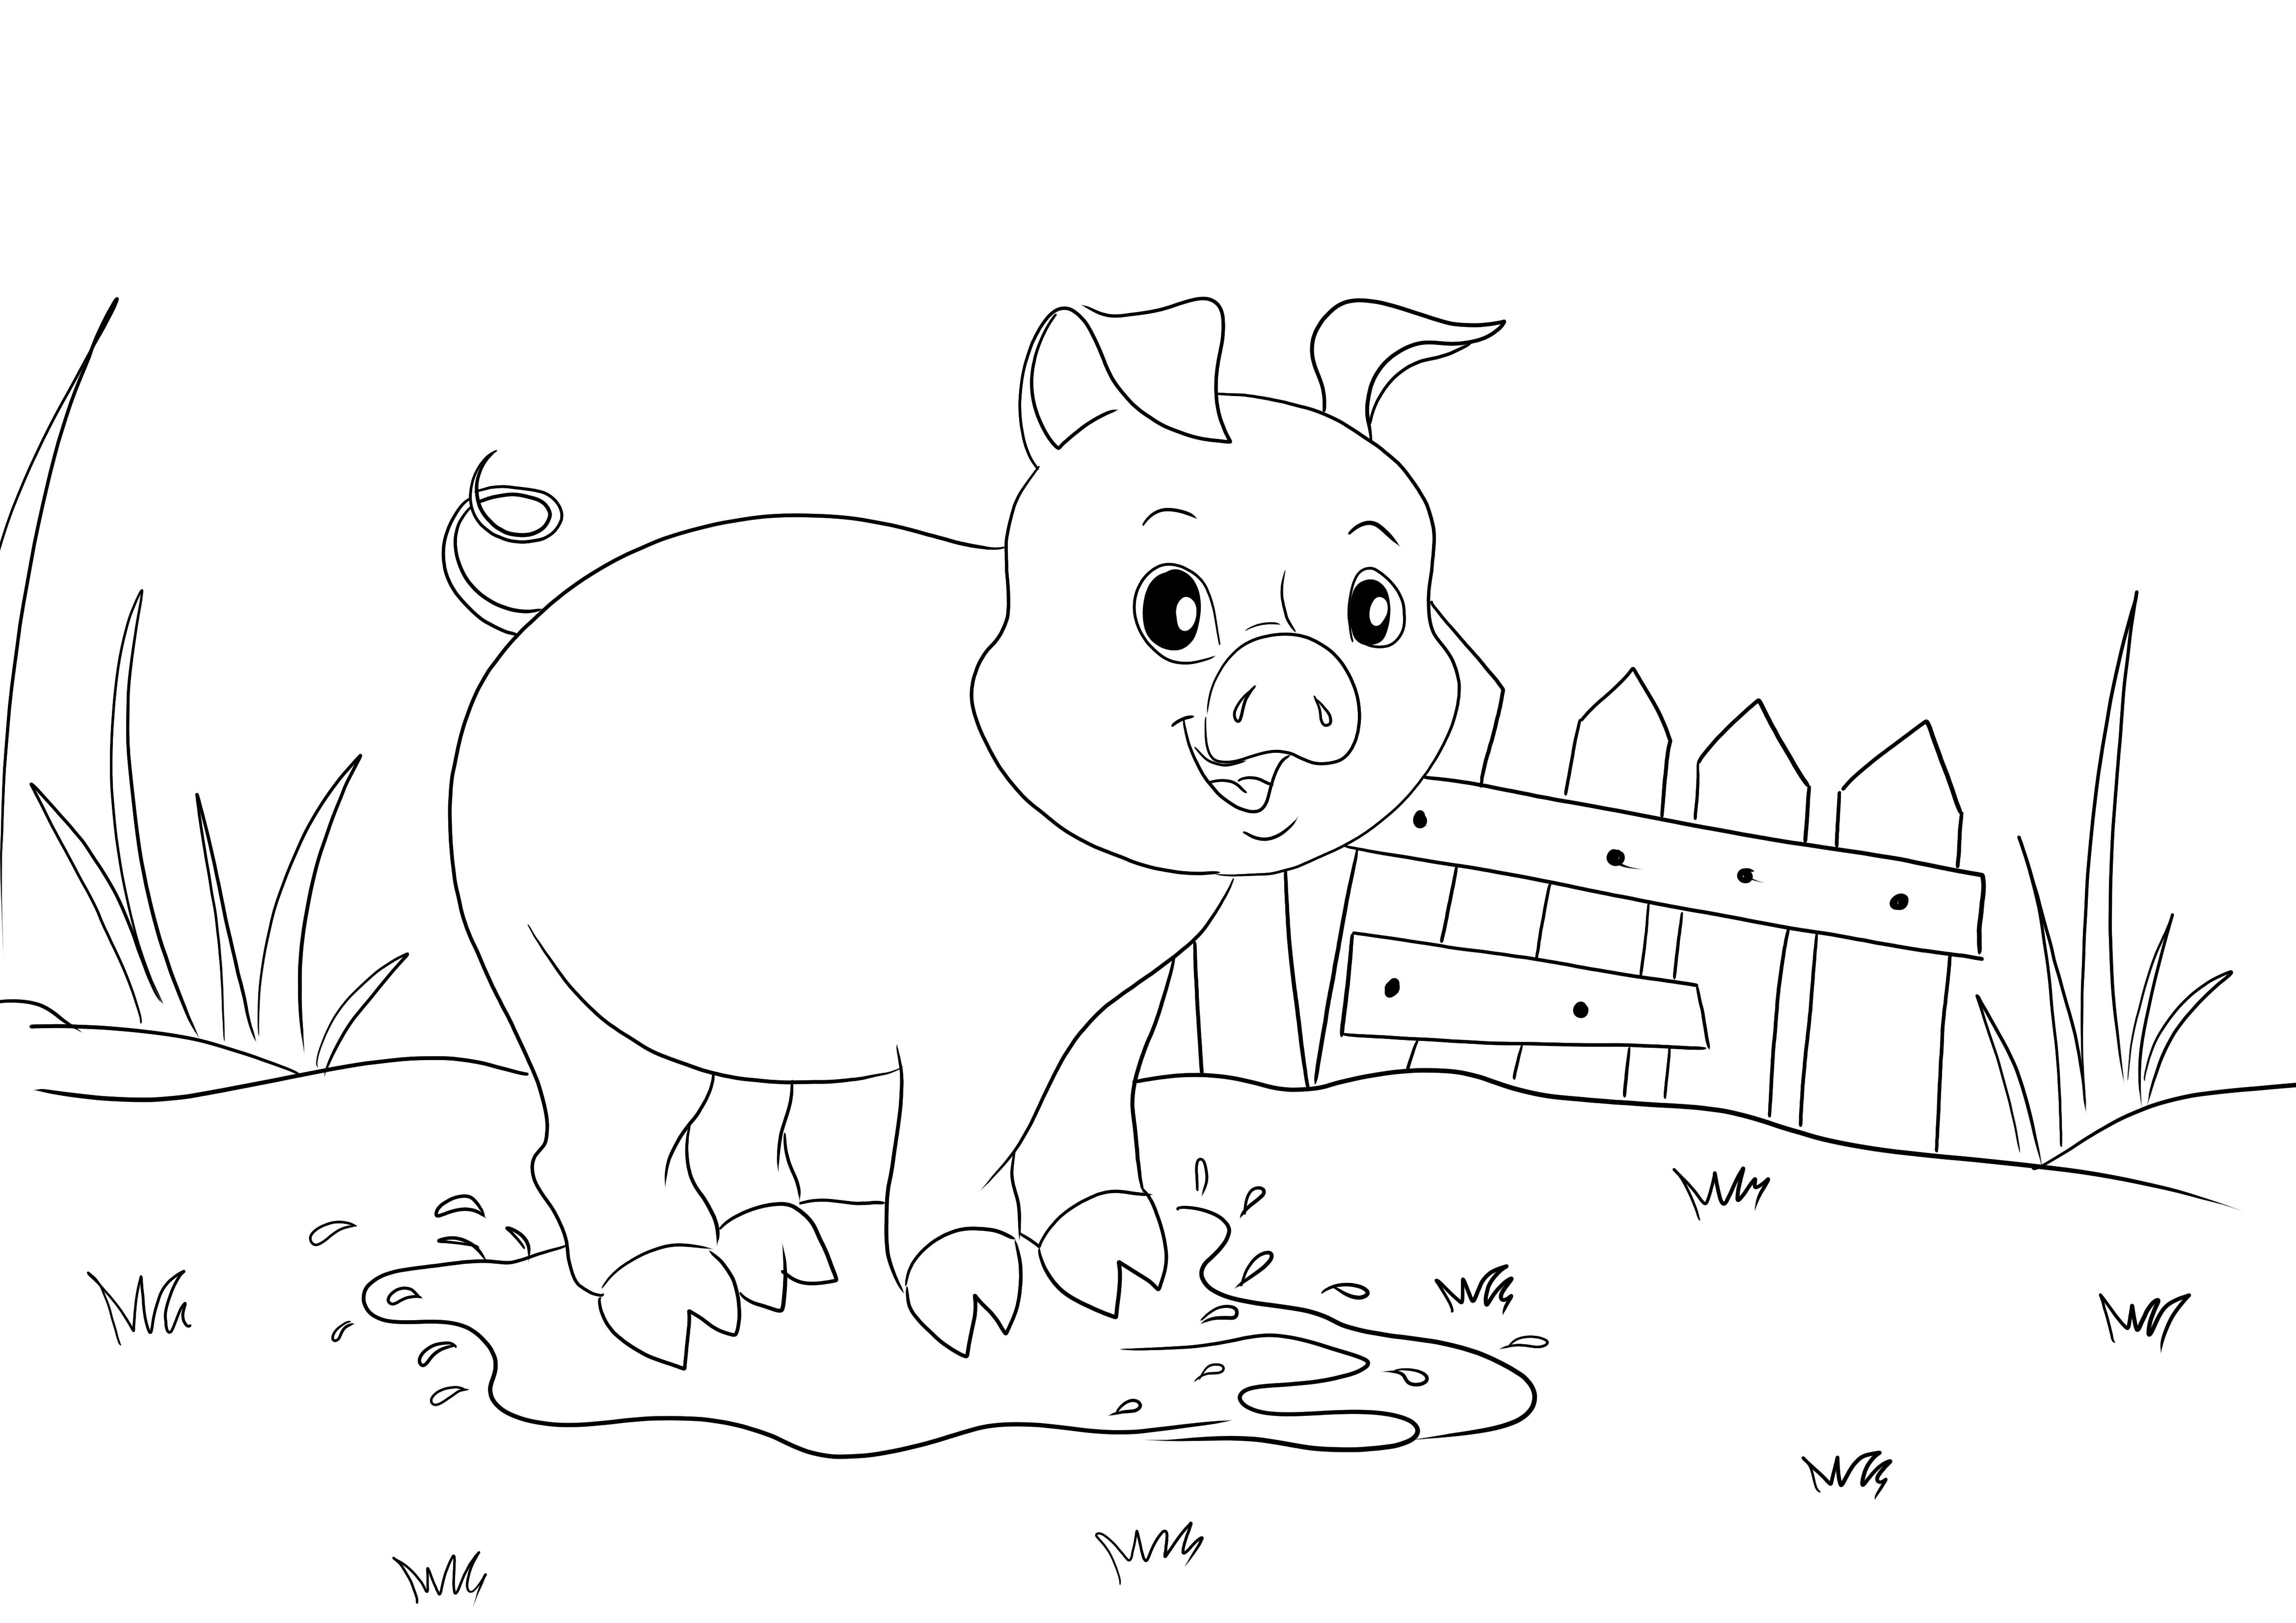 Colorea e imprime gratis la imagen de un Cerdo en un charco para niños